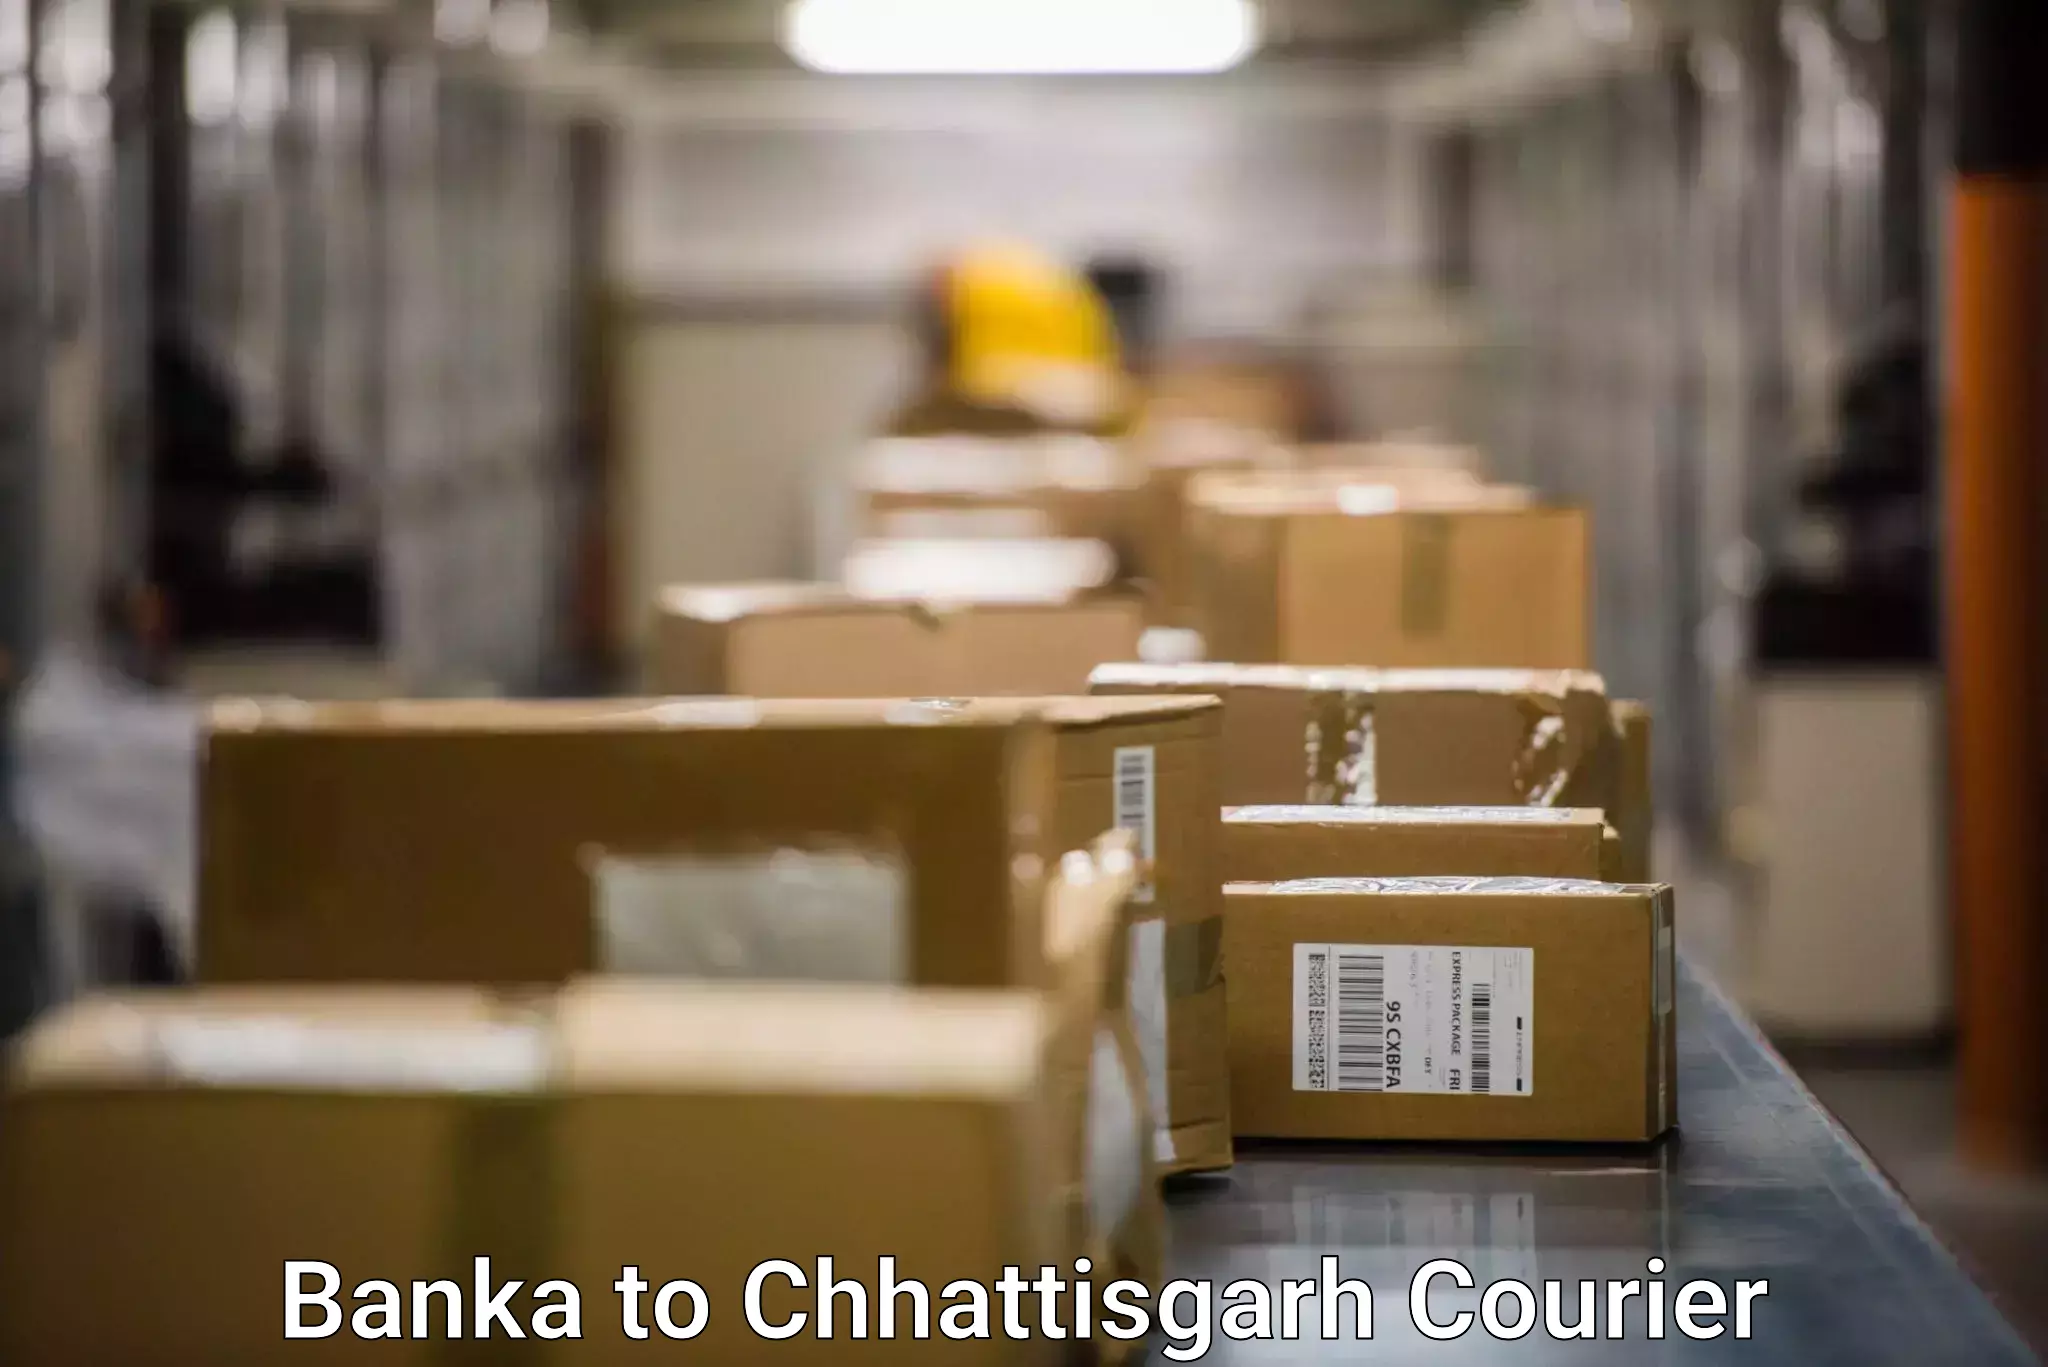 Logistics management Banka to Chhattisgarh